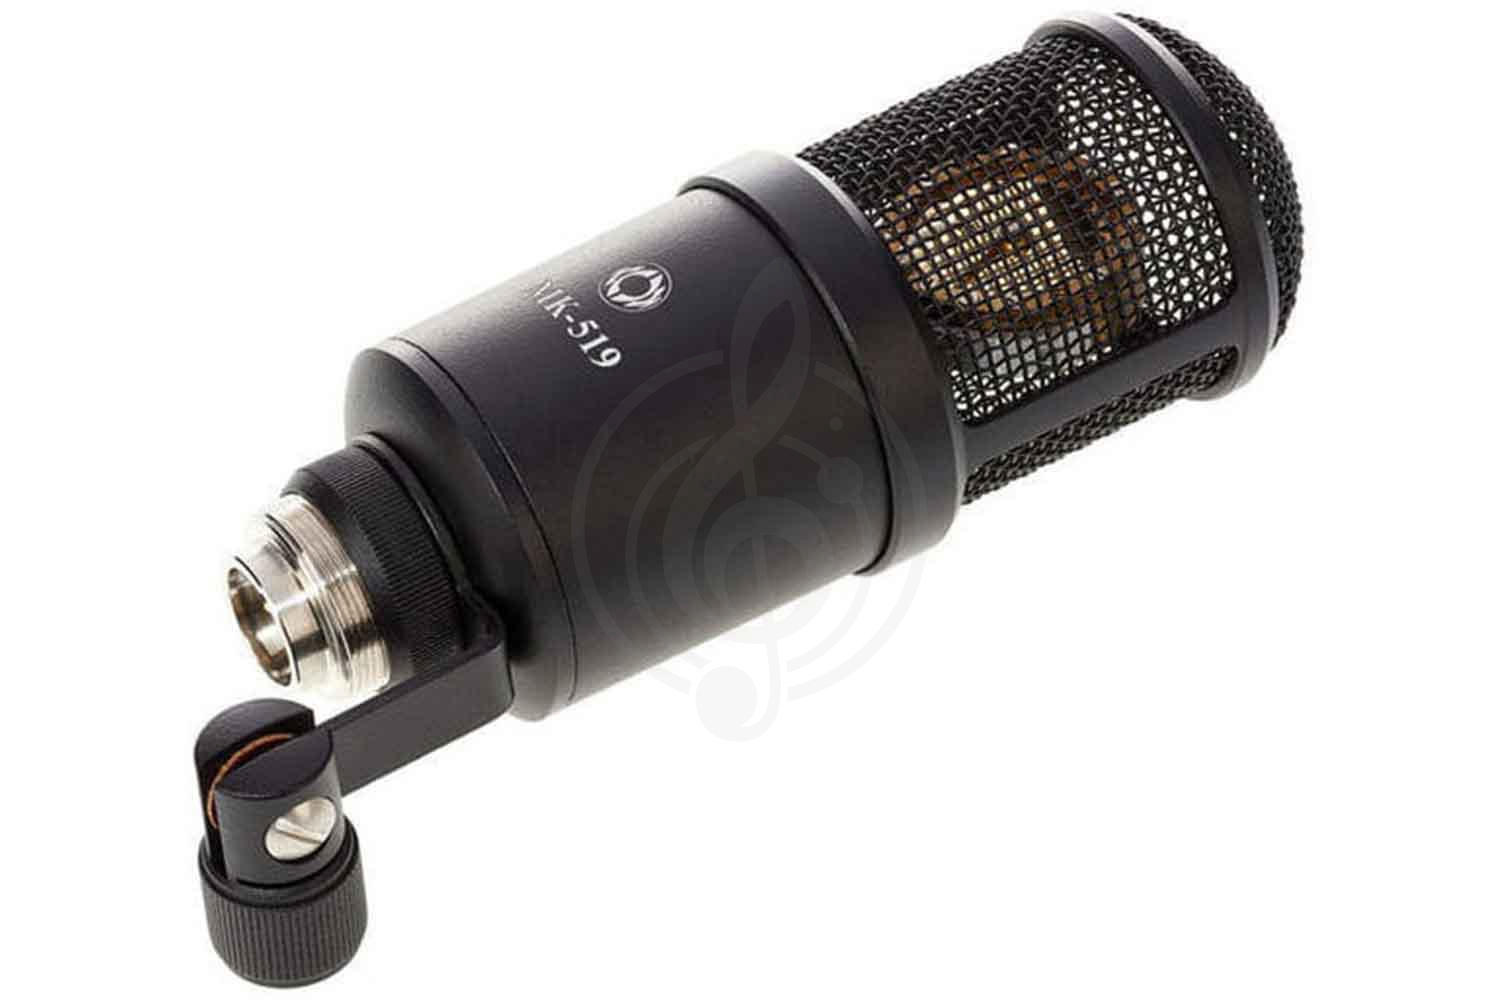 Конденсаторный студийный микрофон Конденсаторные студийные микрофоны Октава Октава МК-519-b - студийный конденсаторный микрофон МК-519-b - фото 2